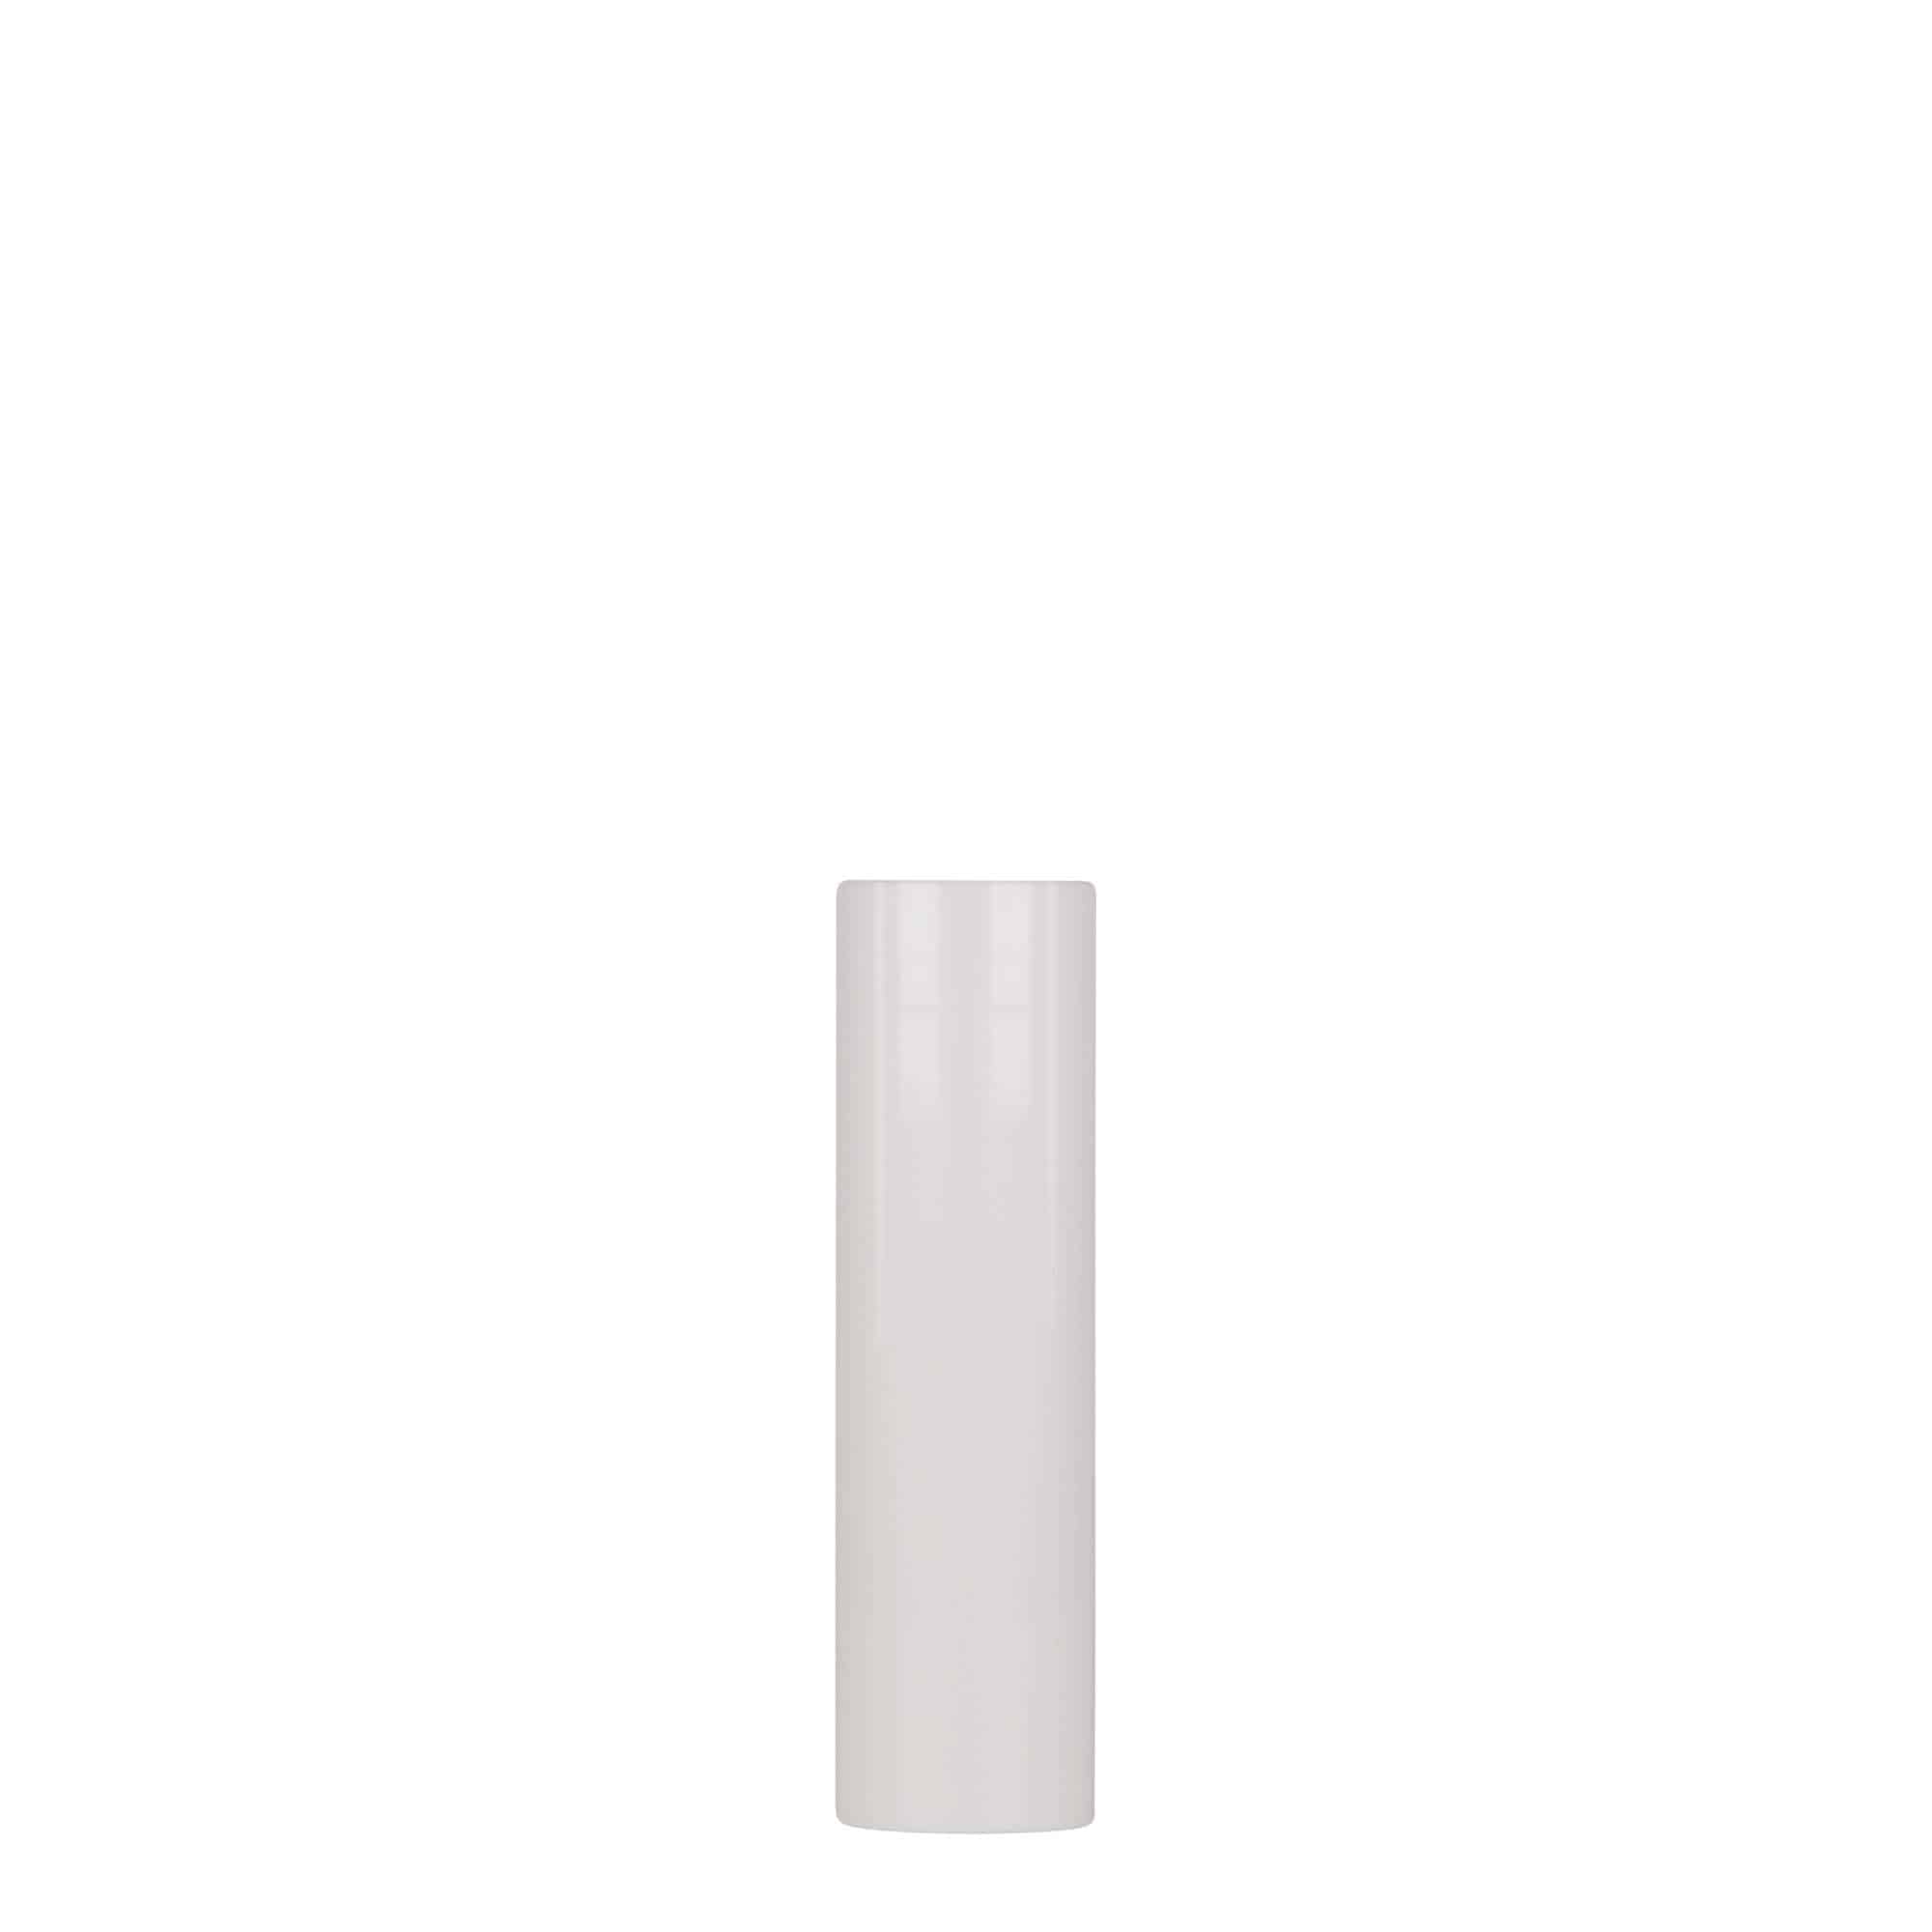 Bezvzduchový dávkovač 15 ml 'Nano', plast PP, bílý